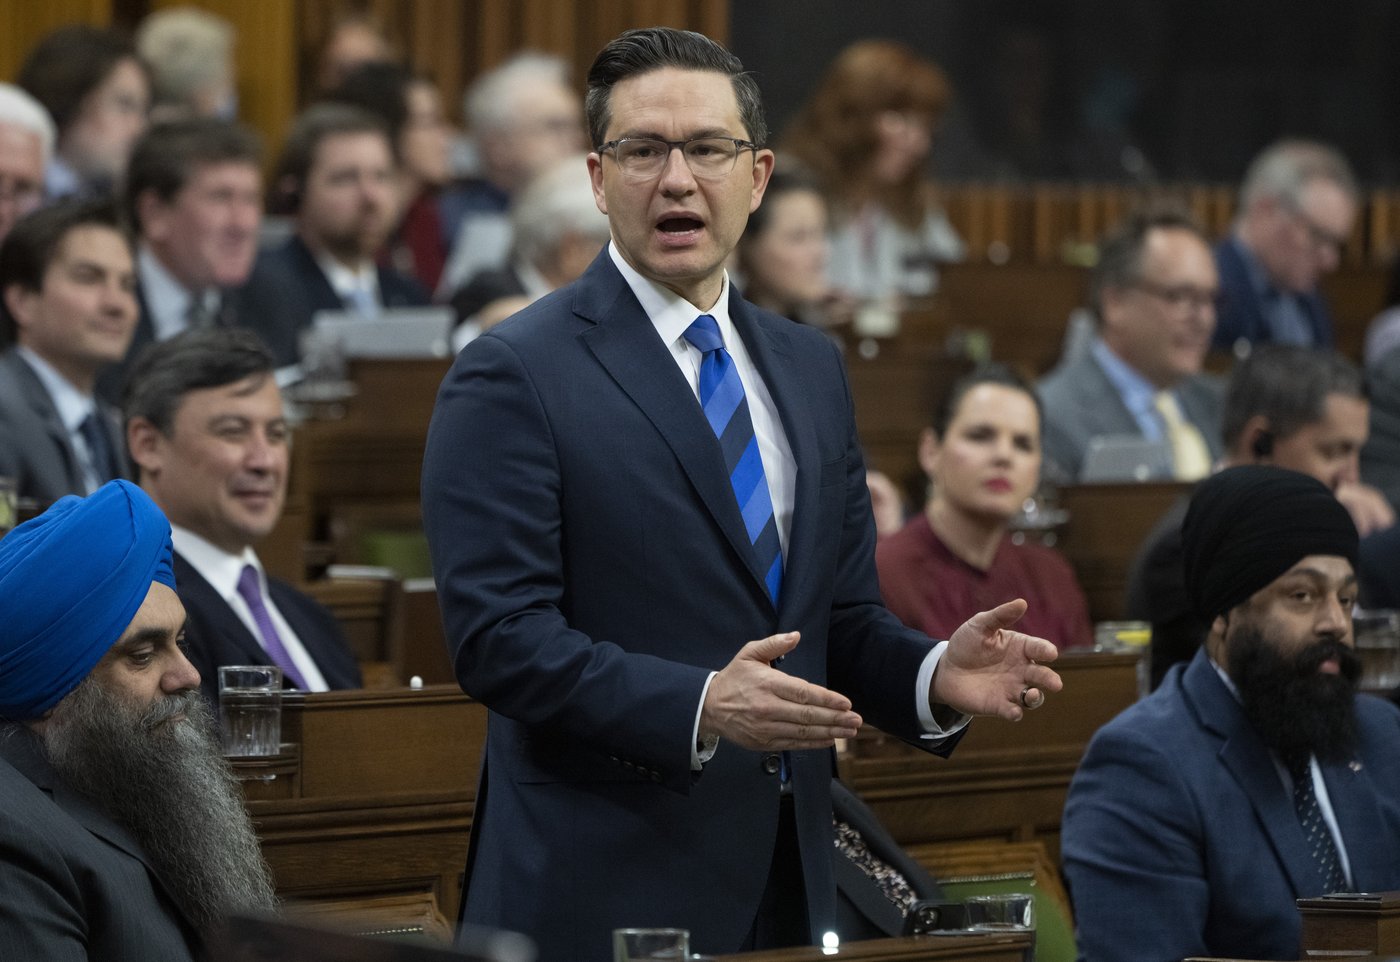 Pierre Poilievre pledges to honour Trudeau's health-care